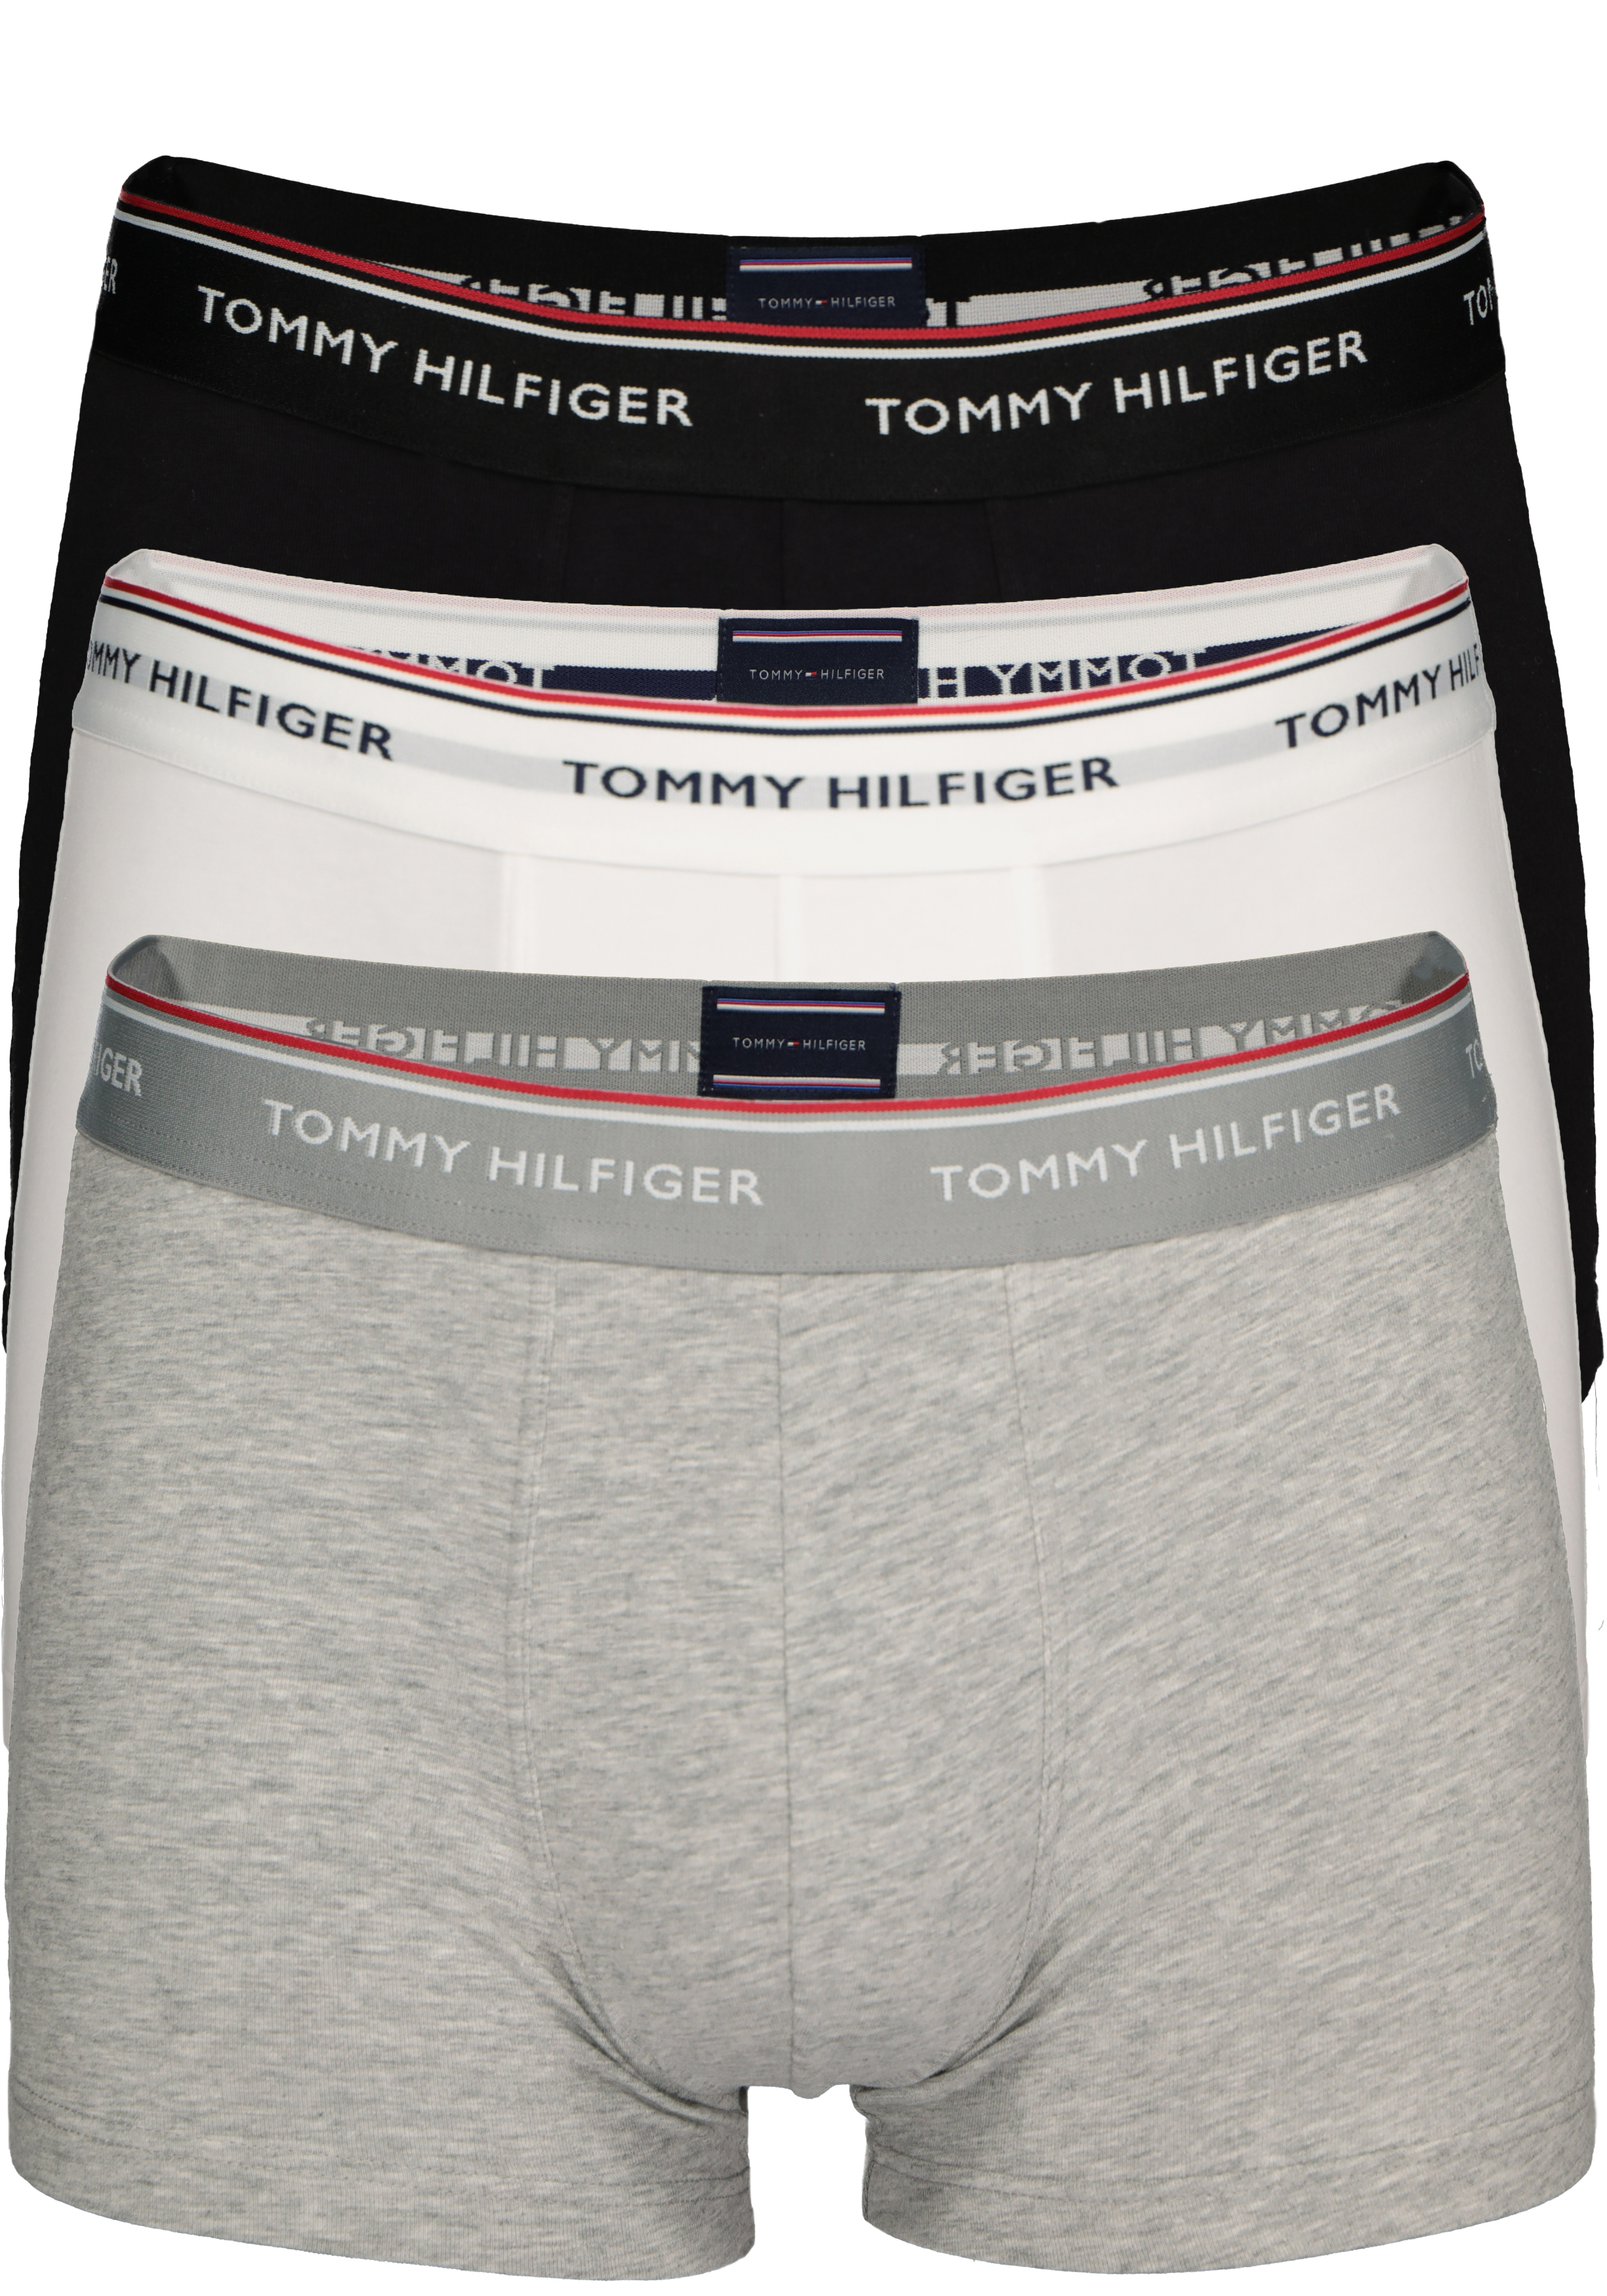 enkel fout overschot Tommy Hilfiger boxershorts (3-pack), zwart- wit en grijs - Gratis bezorgd